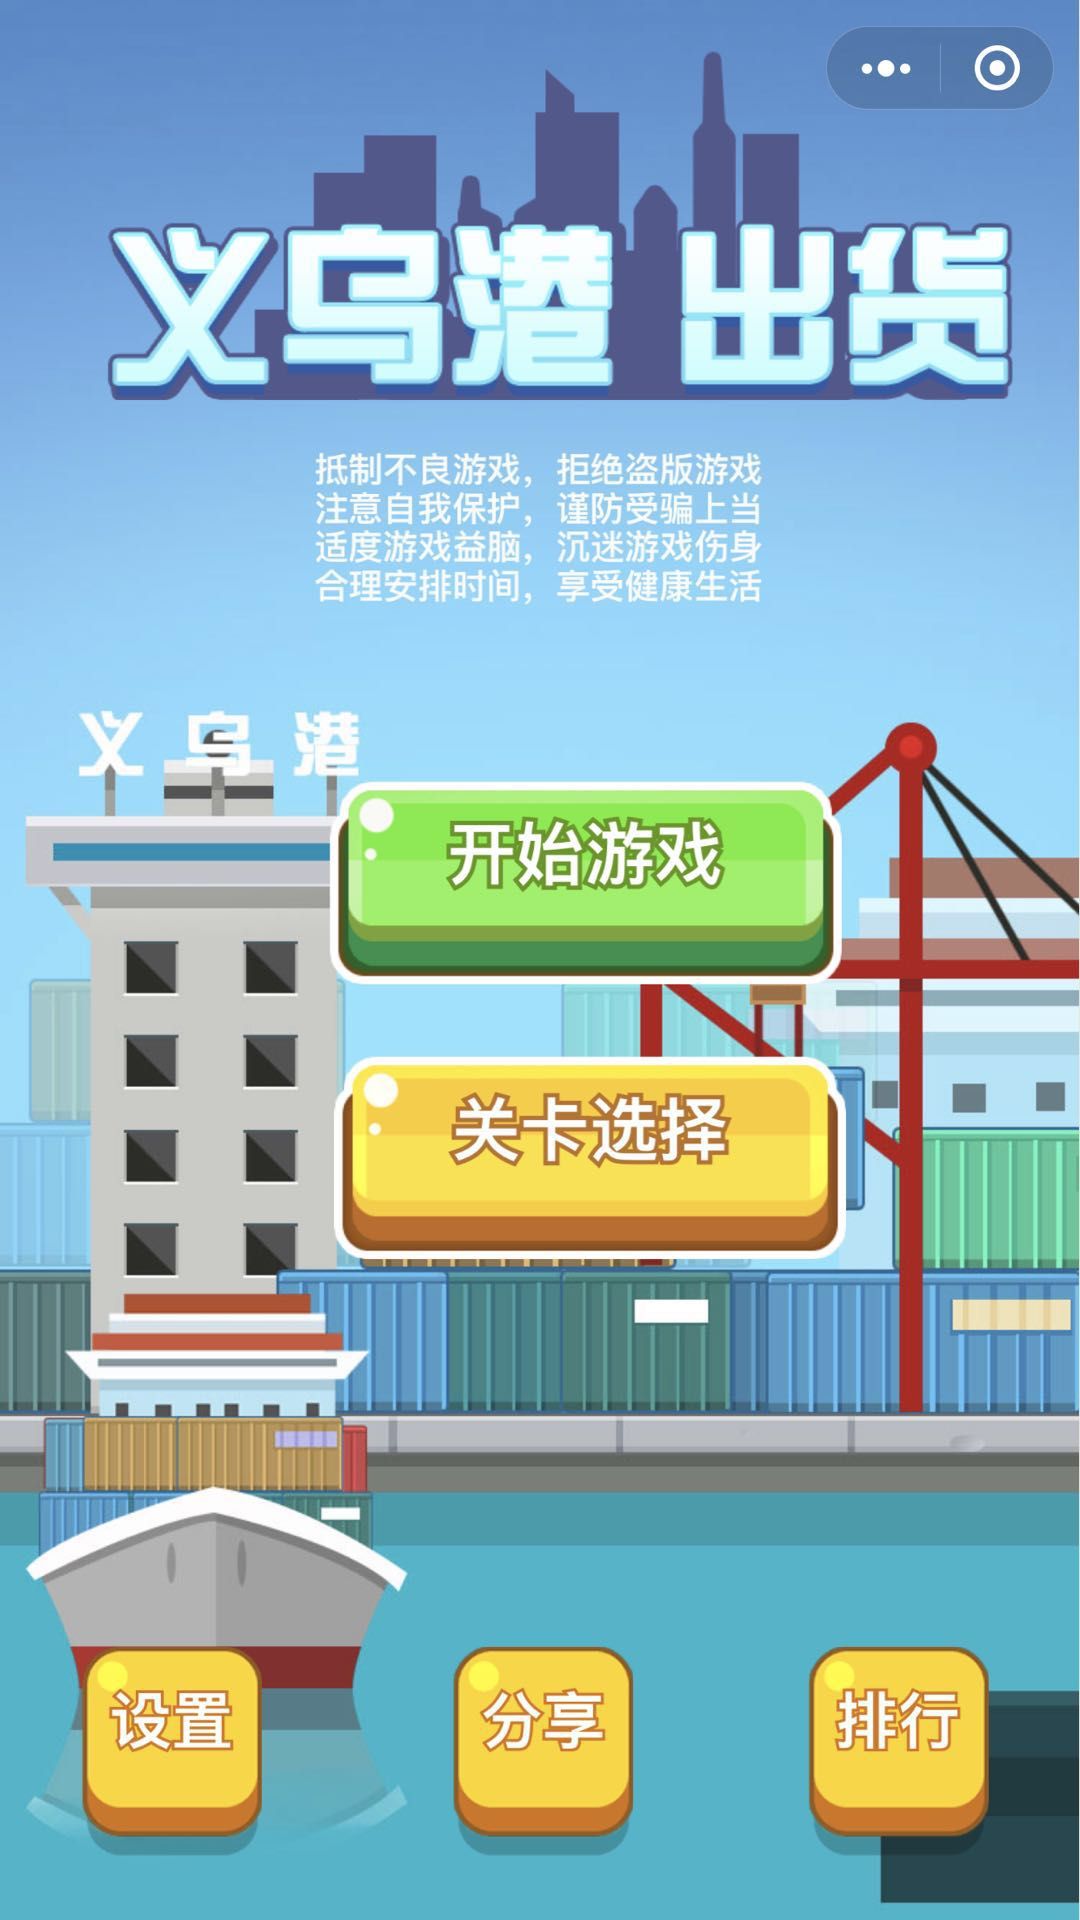 微信义乌港出货游戏官网版下载图片1